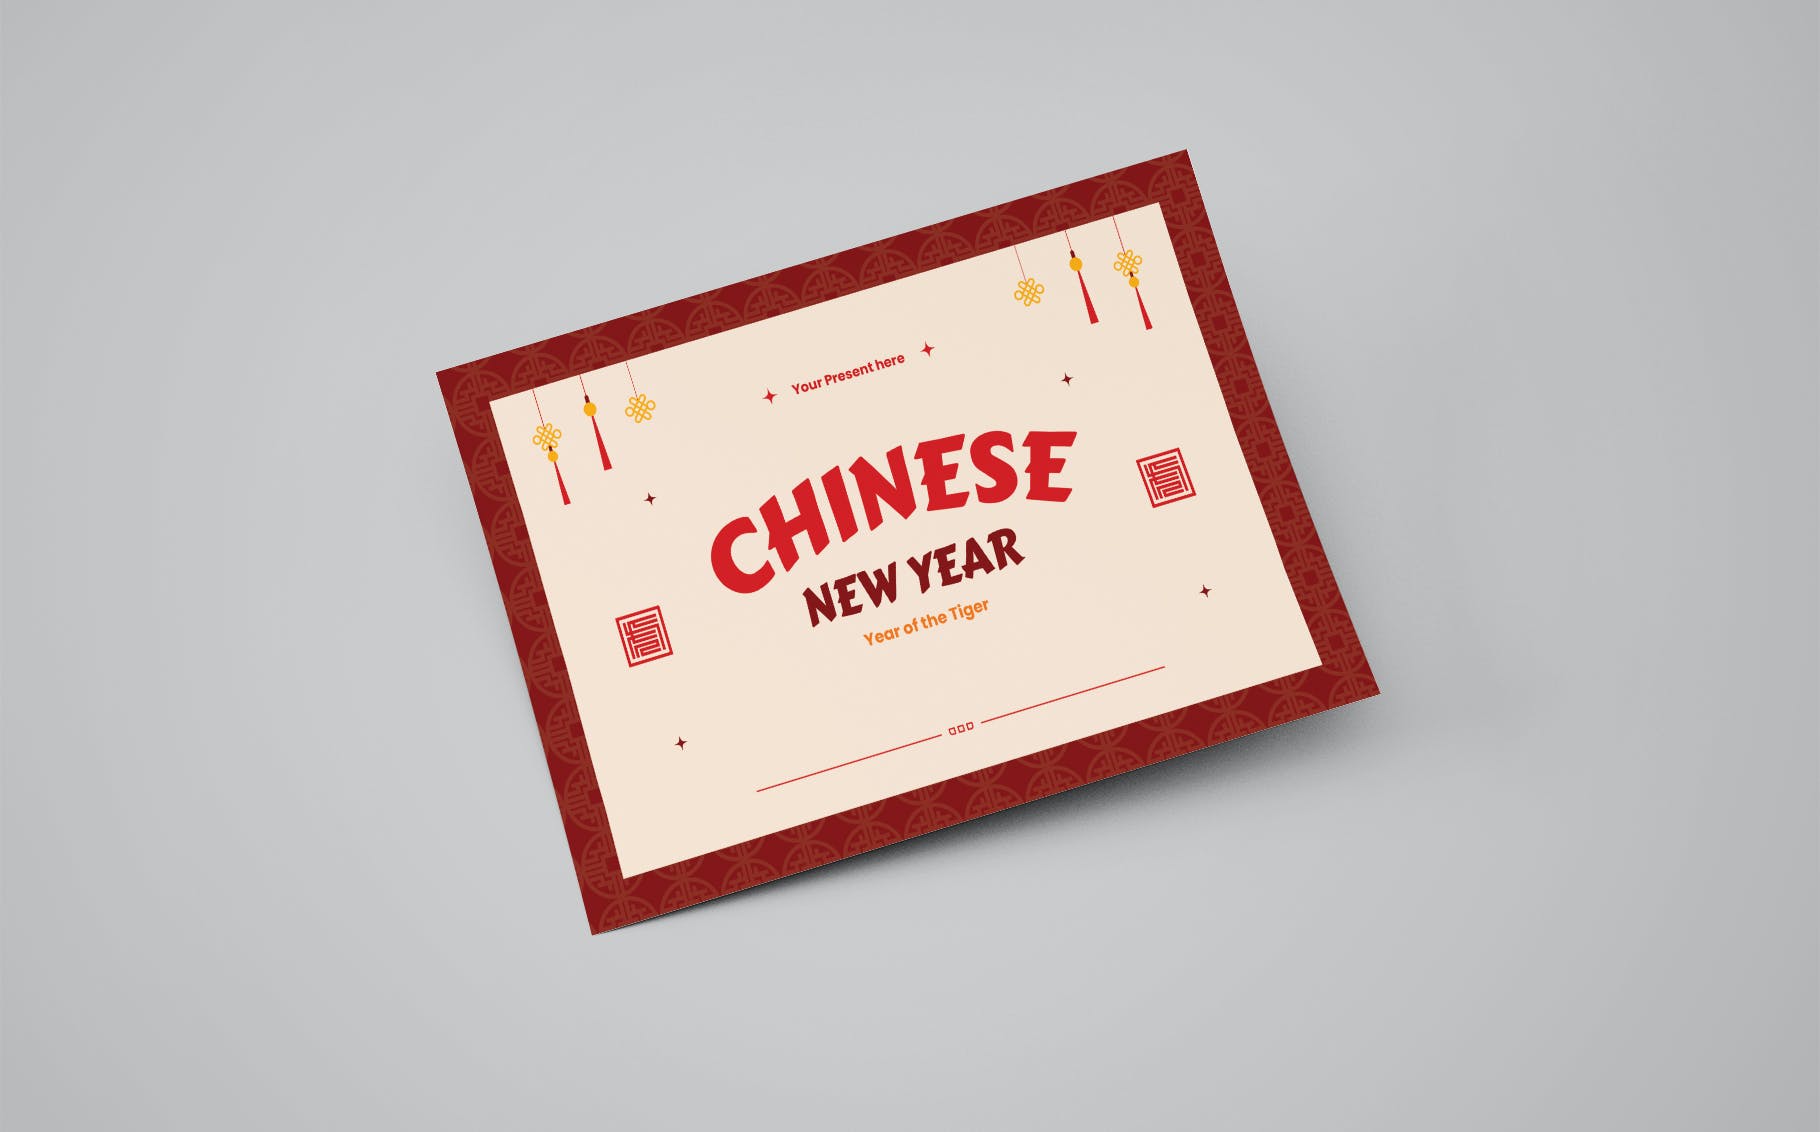 中国新年祝福贺卡设计模板 Chinese New Year Greeting Card Template 设计素材 第3张